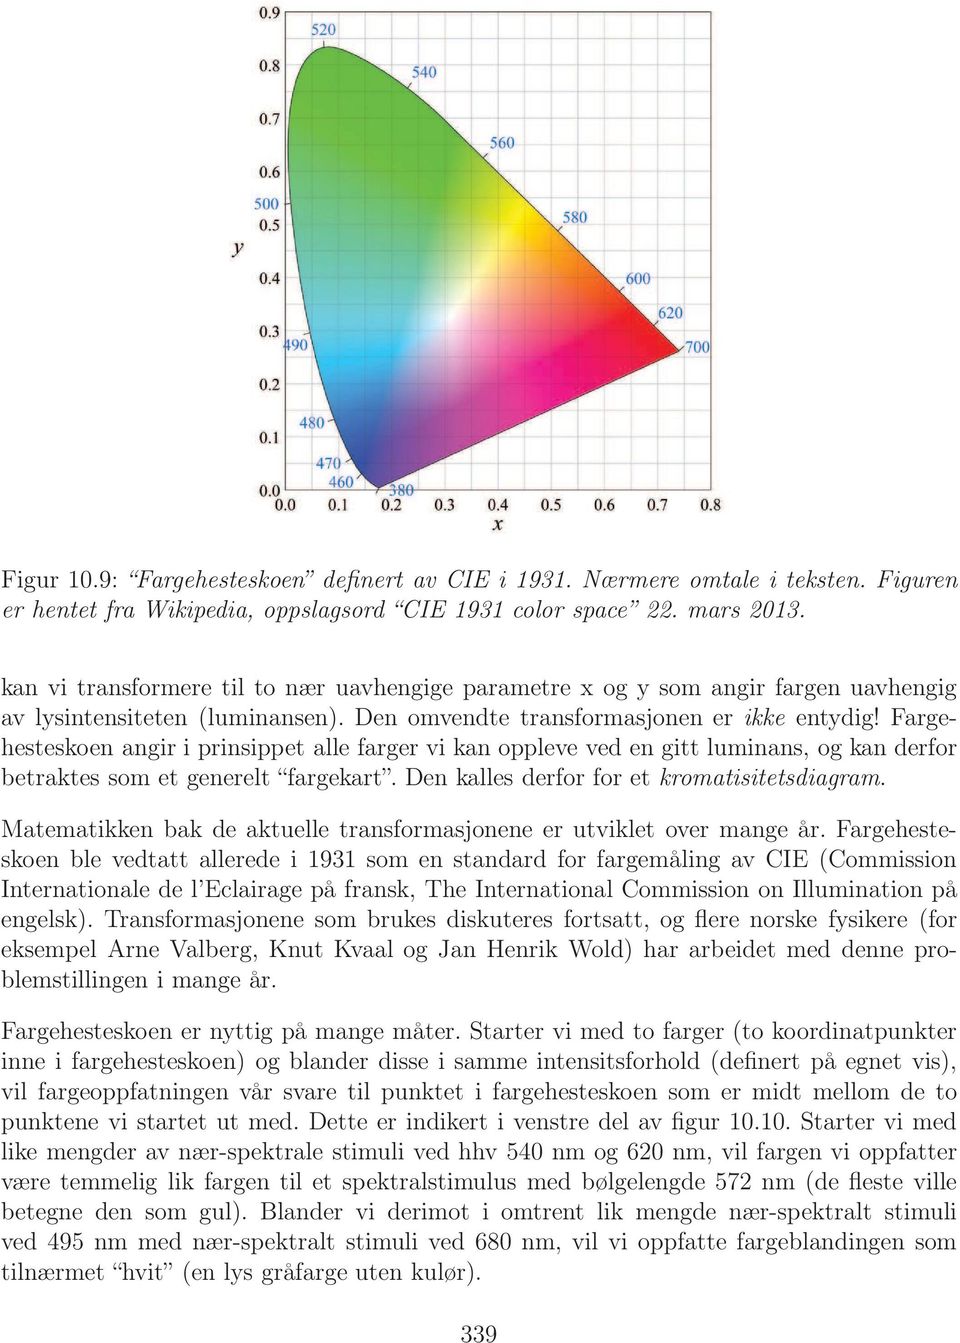 Fargehesteskoen angir i prinsippet alle farger vi kan oppleve ved en gitt luminans, og kan derfor betraktes som et generelt fargekart. Den kalles derfor for et kromatisitetsdiagram.